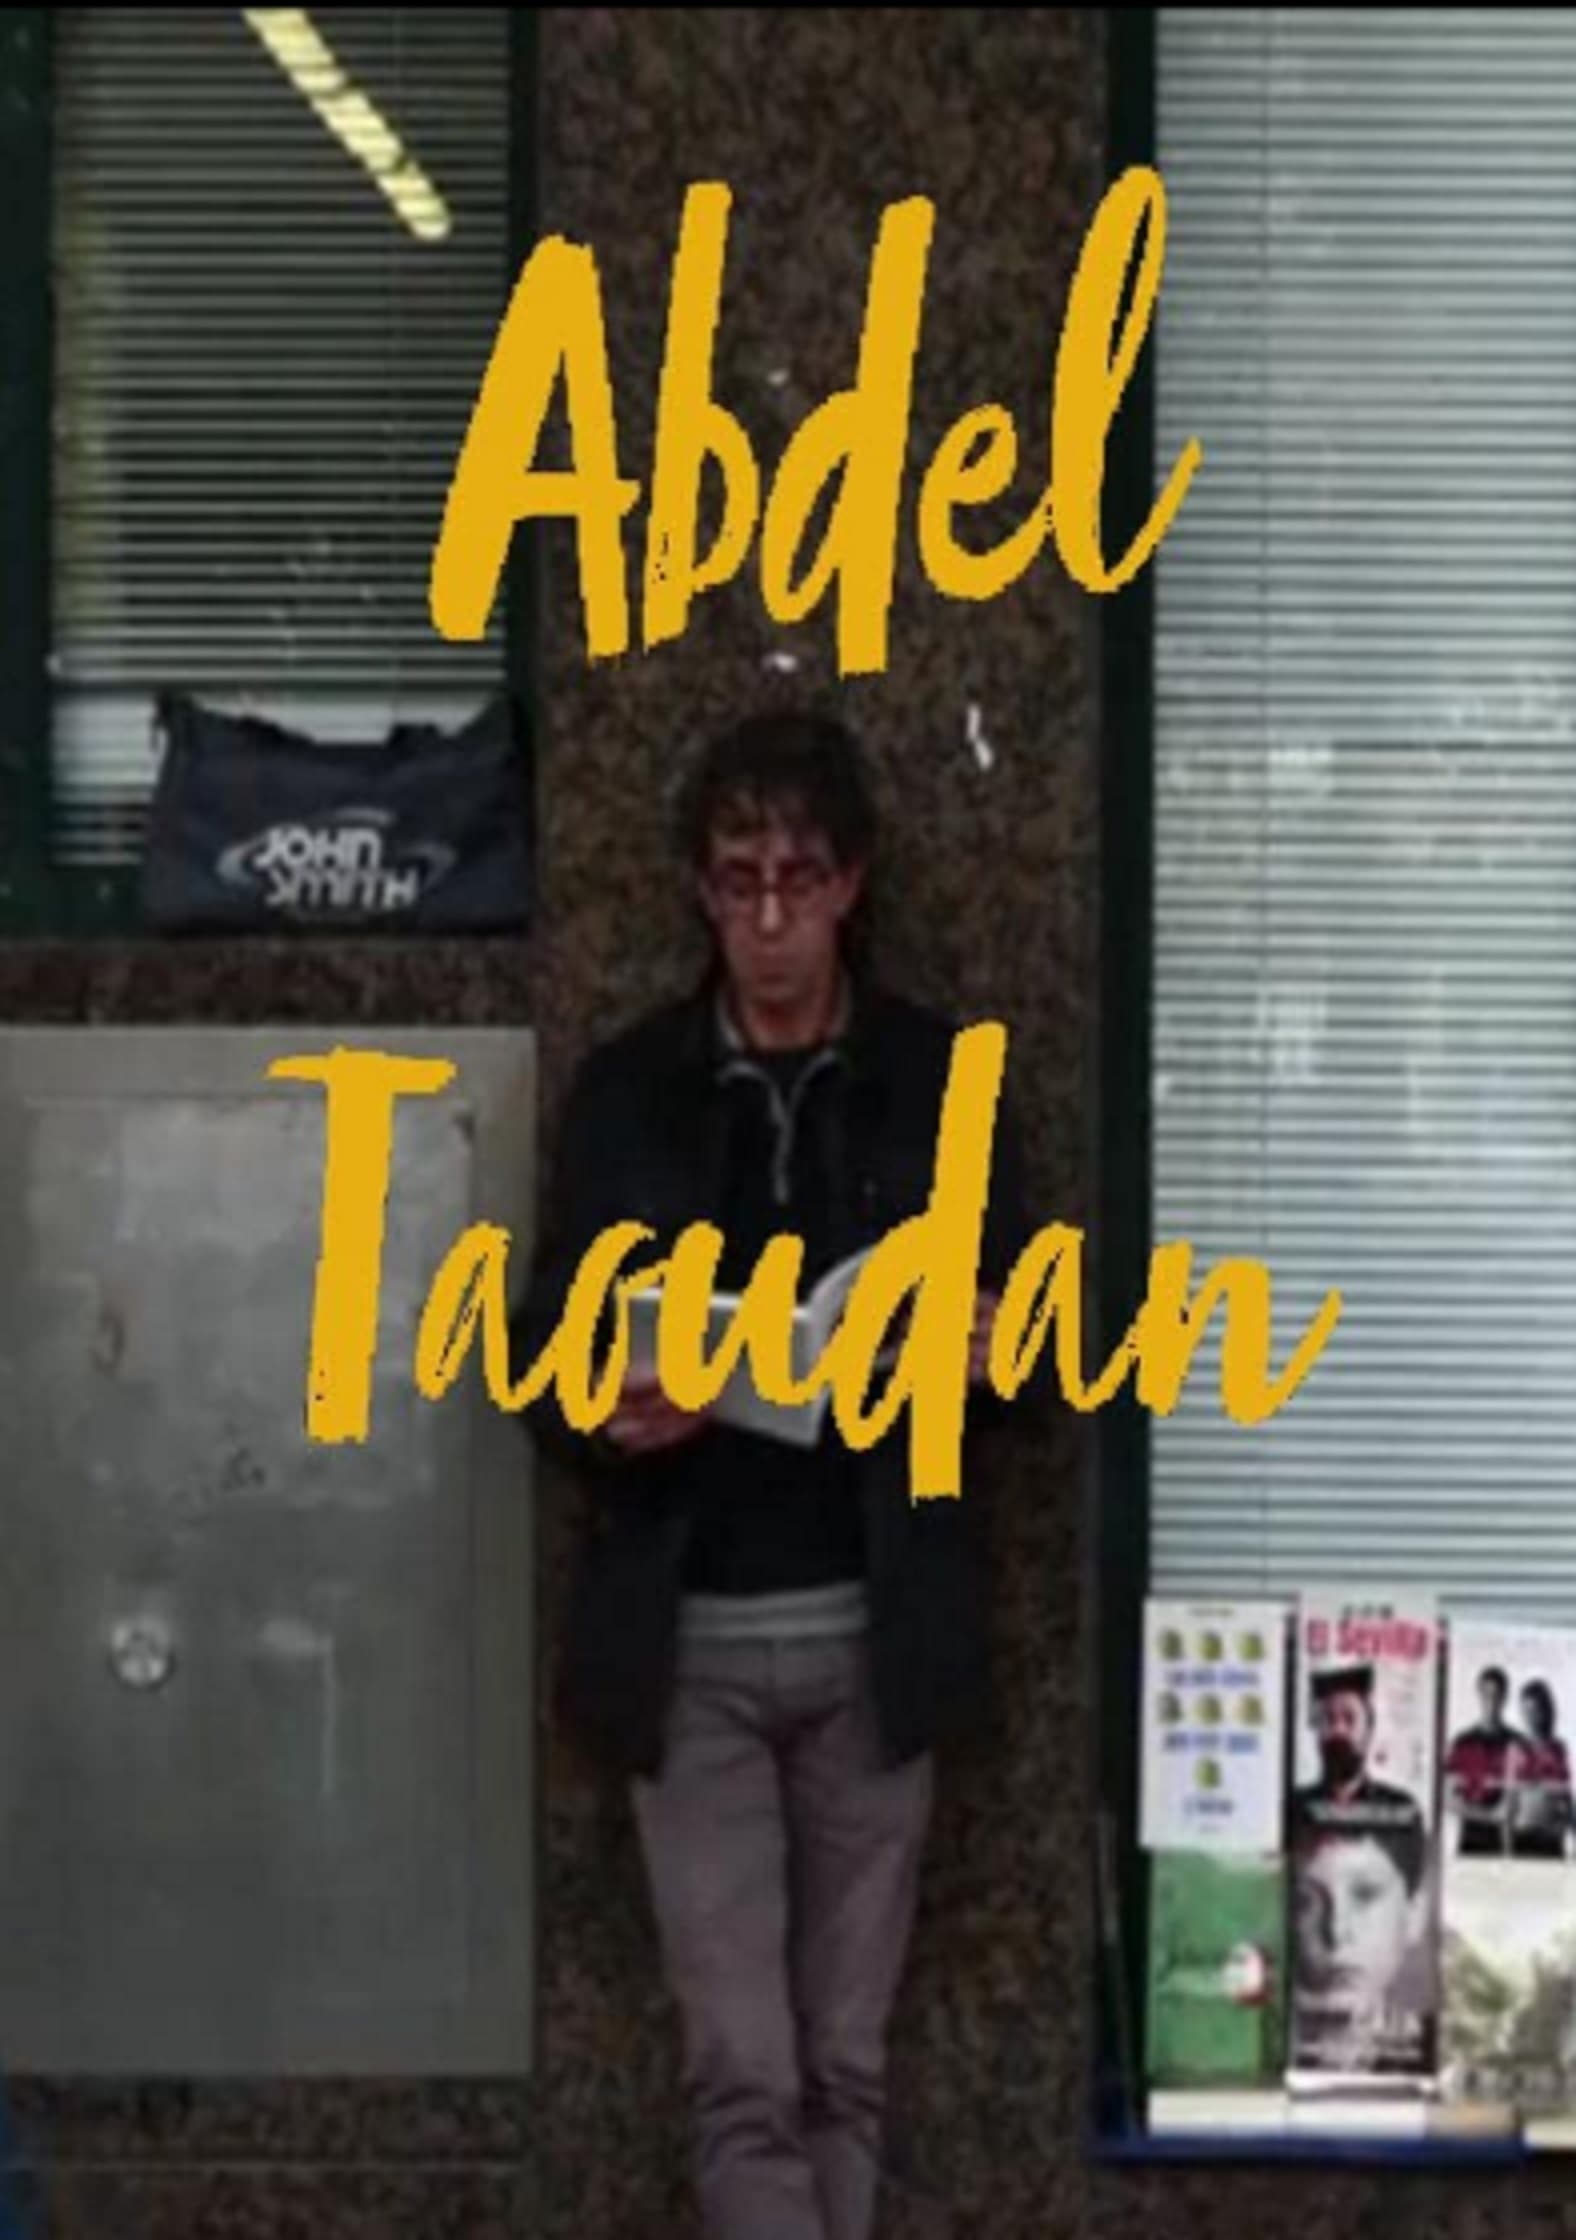 Abdel Taoudan